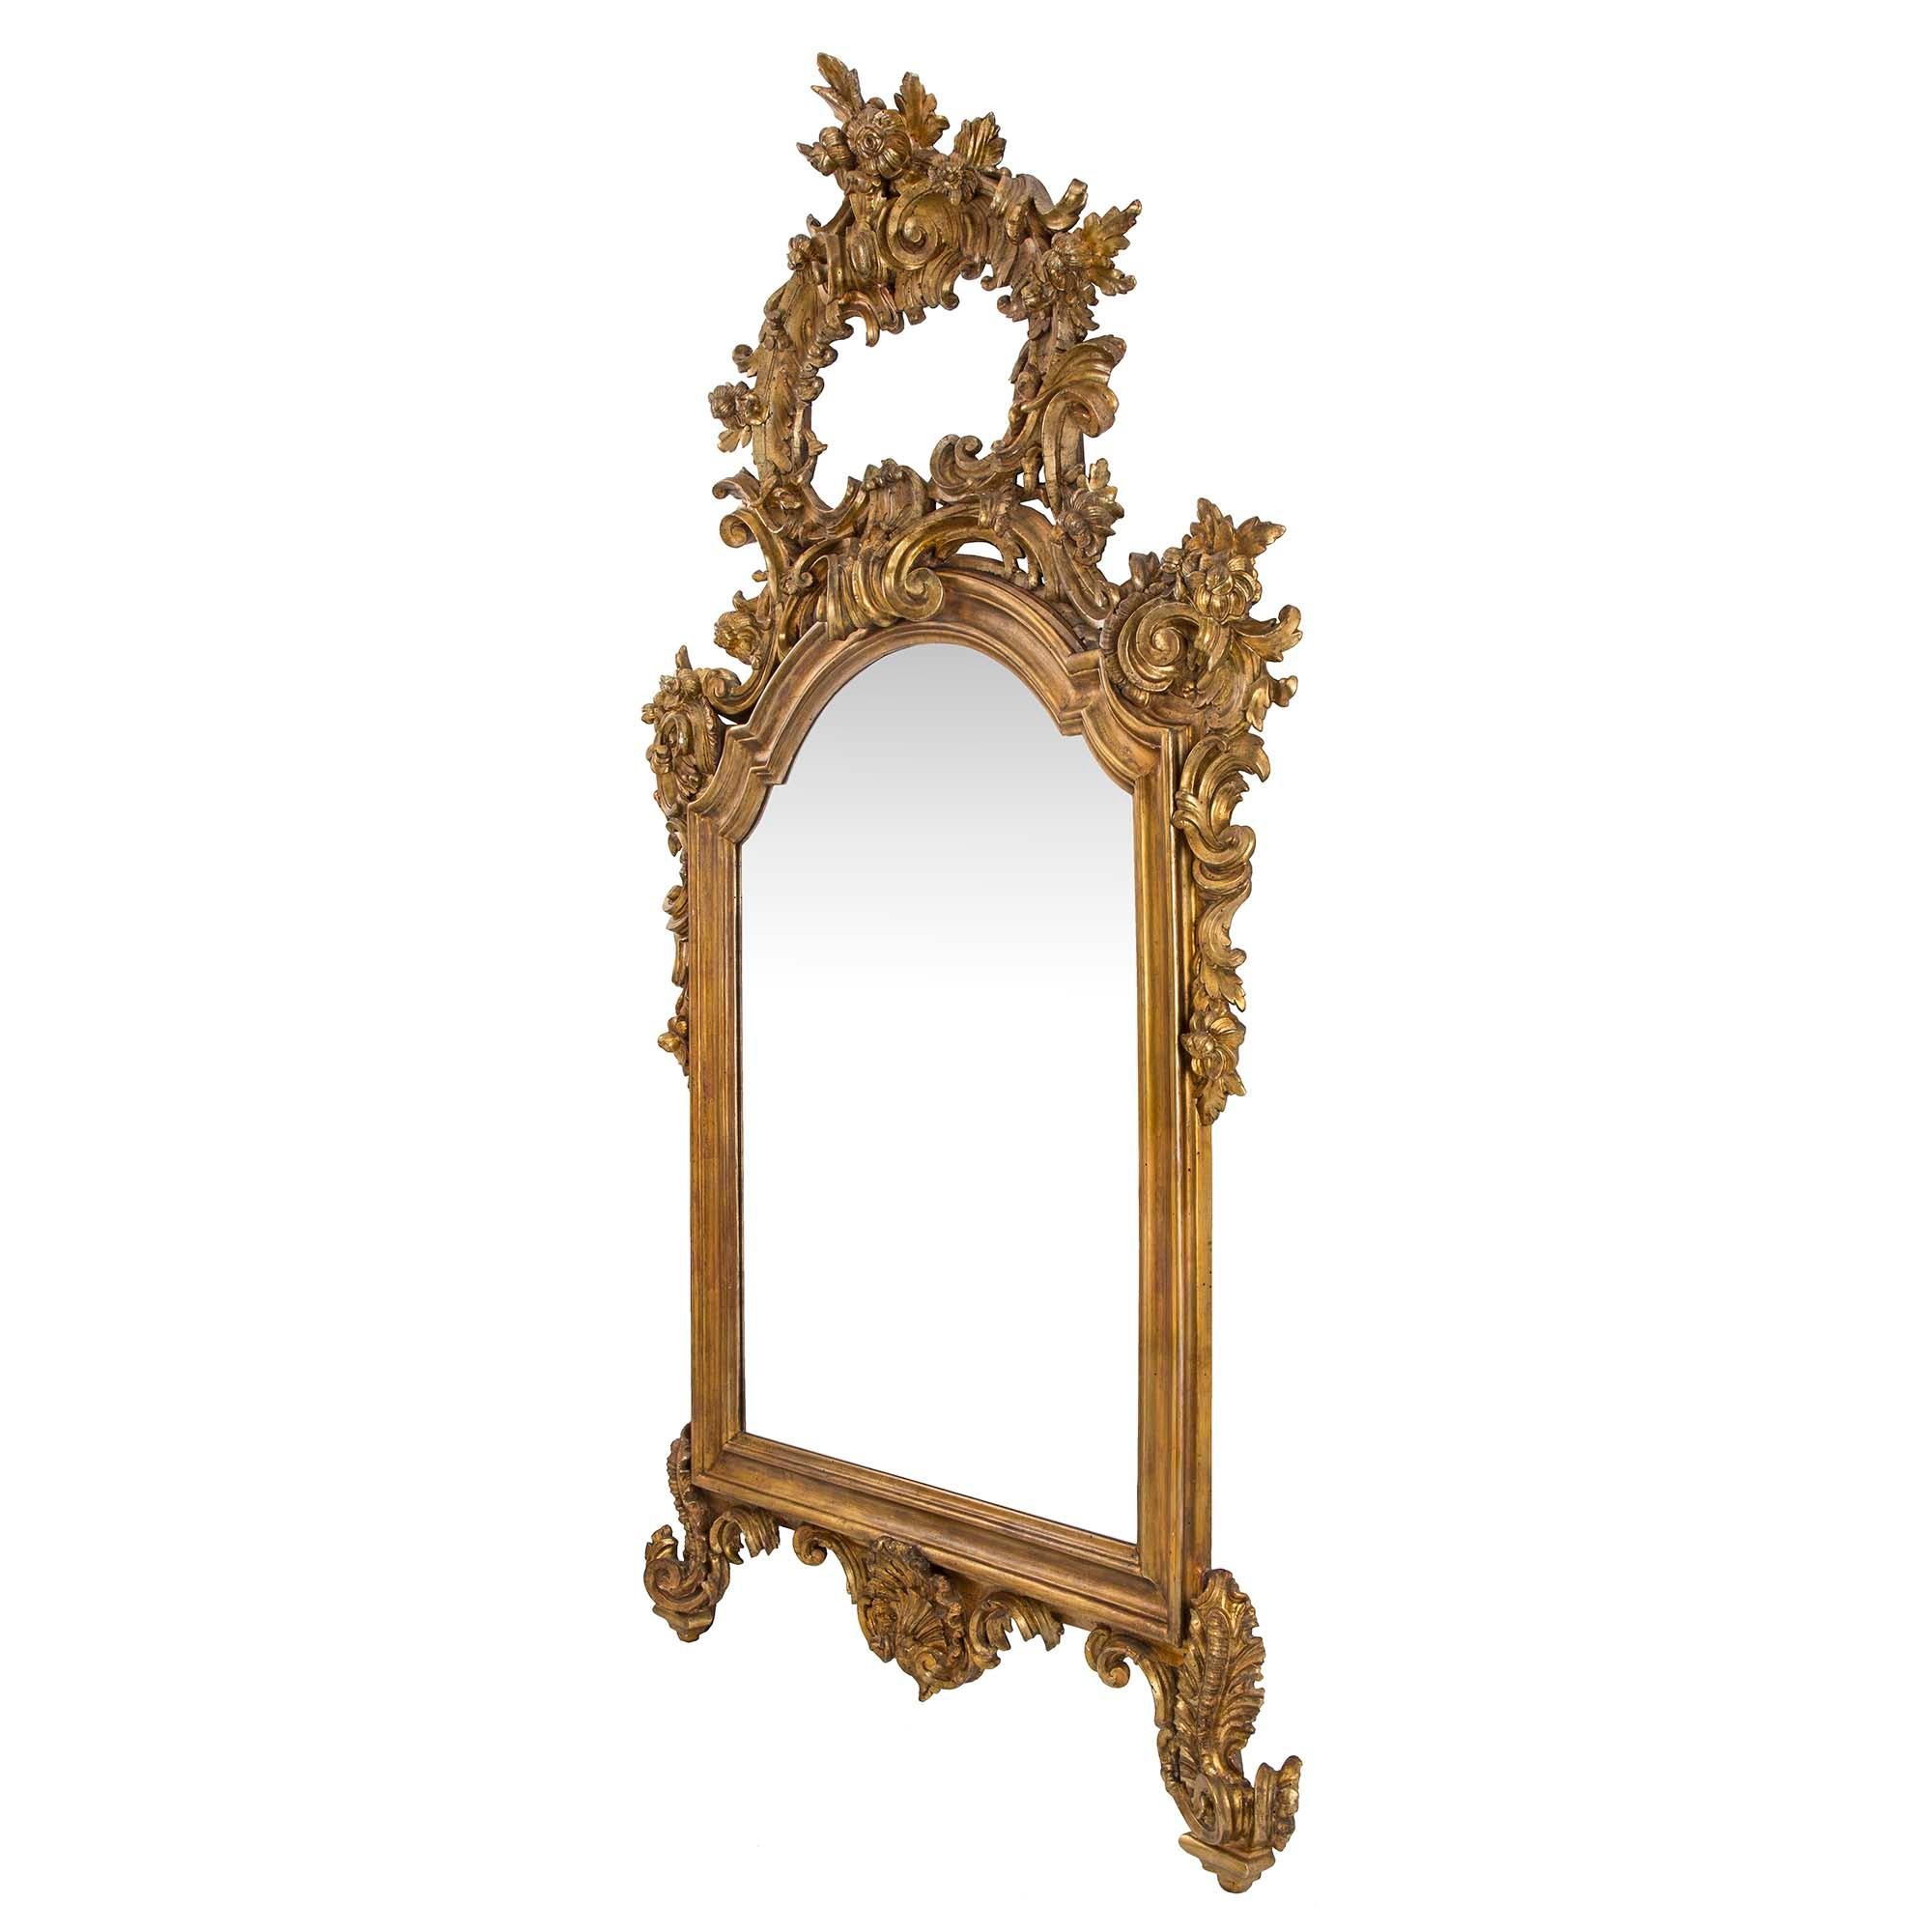 Ein prächtiges Paar italienischer, fein geschnitzter Mekka-Spiegel im Stil Louis XV des 19. Jeder Spiegel steht auf eleganten und reich geschnitzten, blattförmigen Füßen, die eine feine Muschelreserve zentrieren. In der Mitte befinden sich die